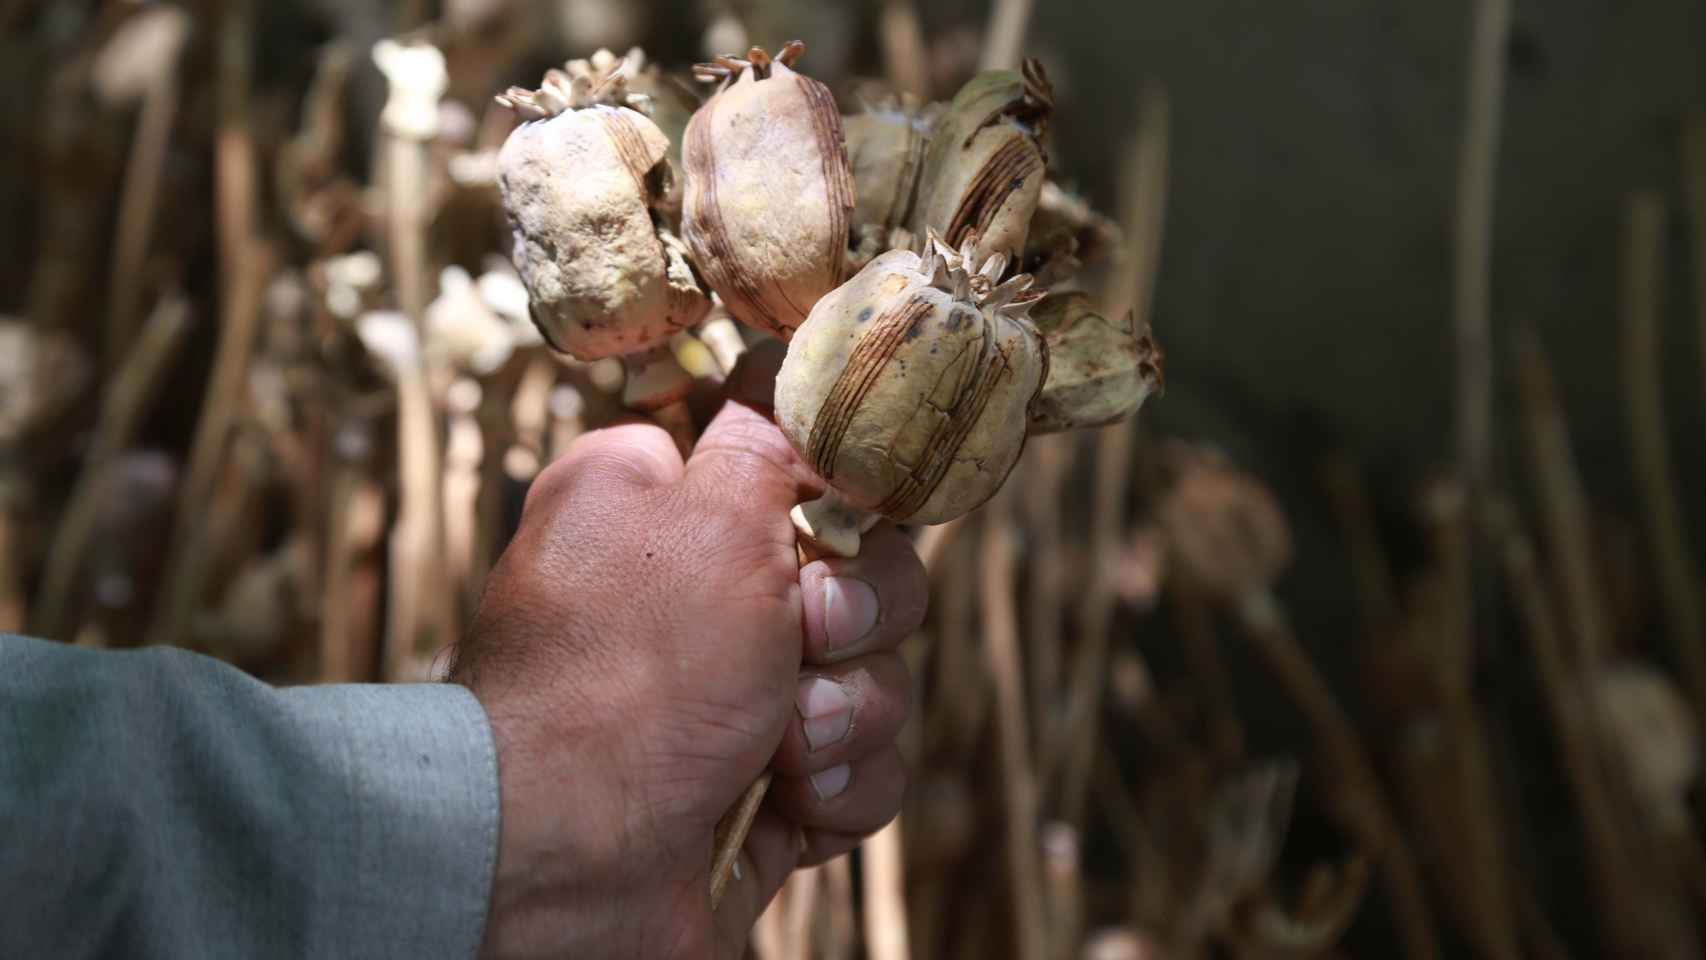 Agricultores extraen opio (heroína cruda) de los capullos de amapola y los conservan en el distrito de Khogyani.